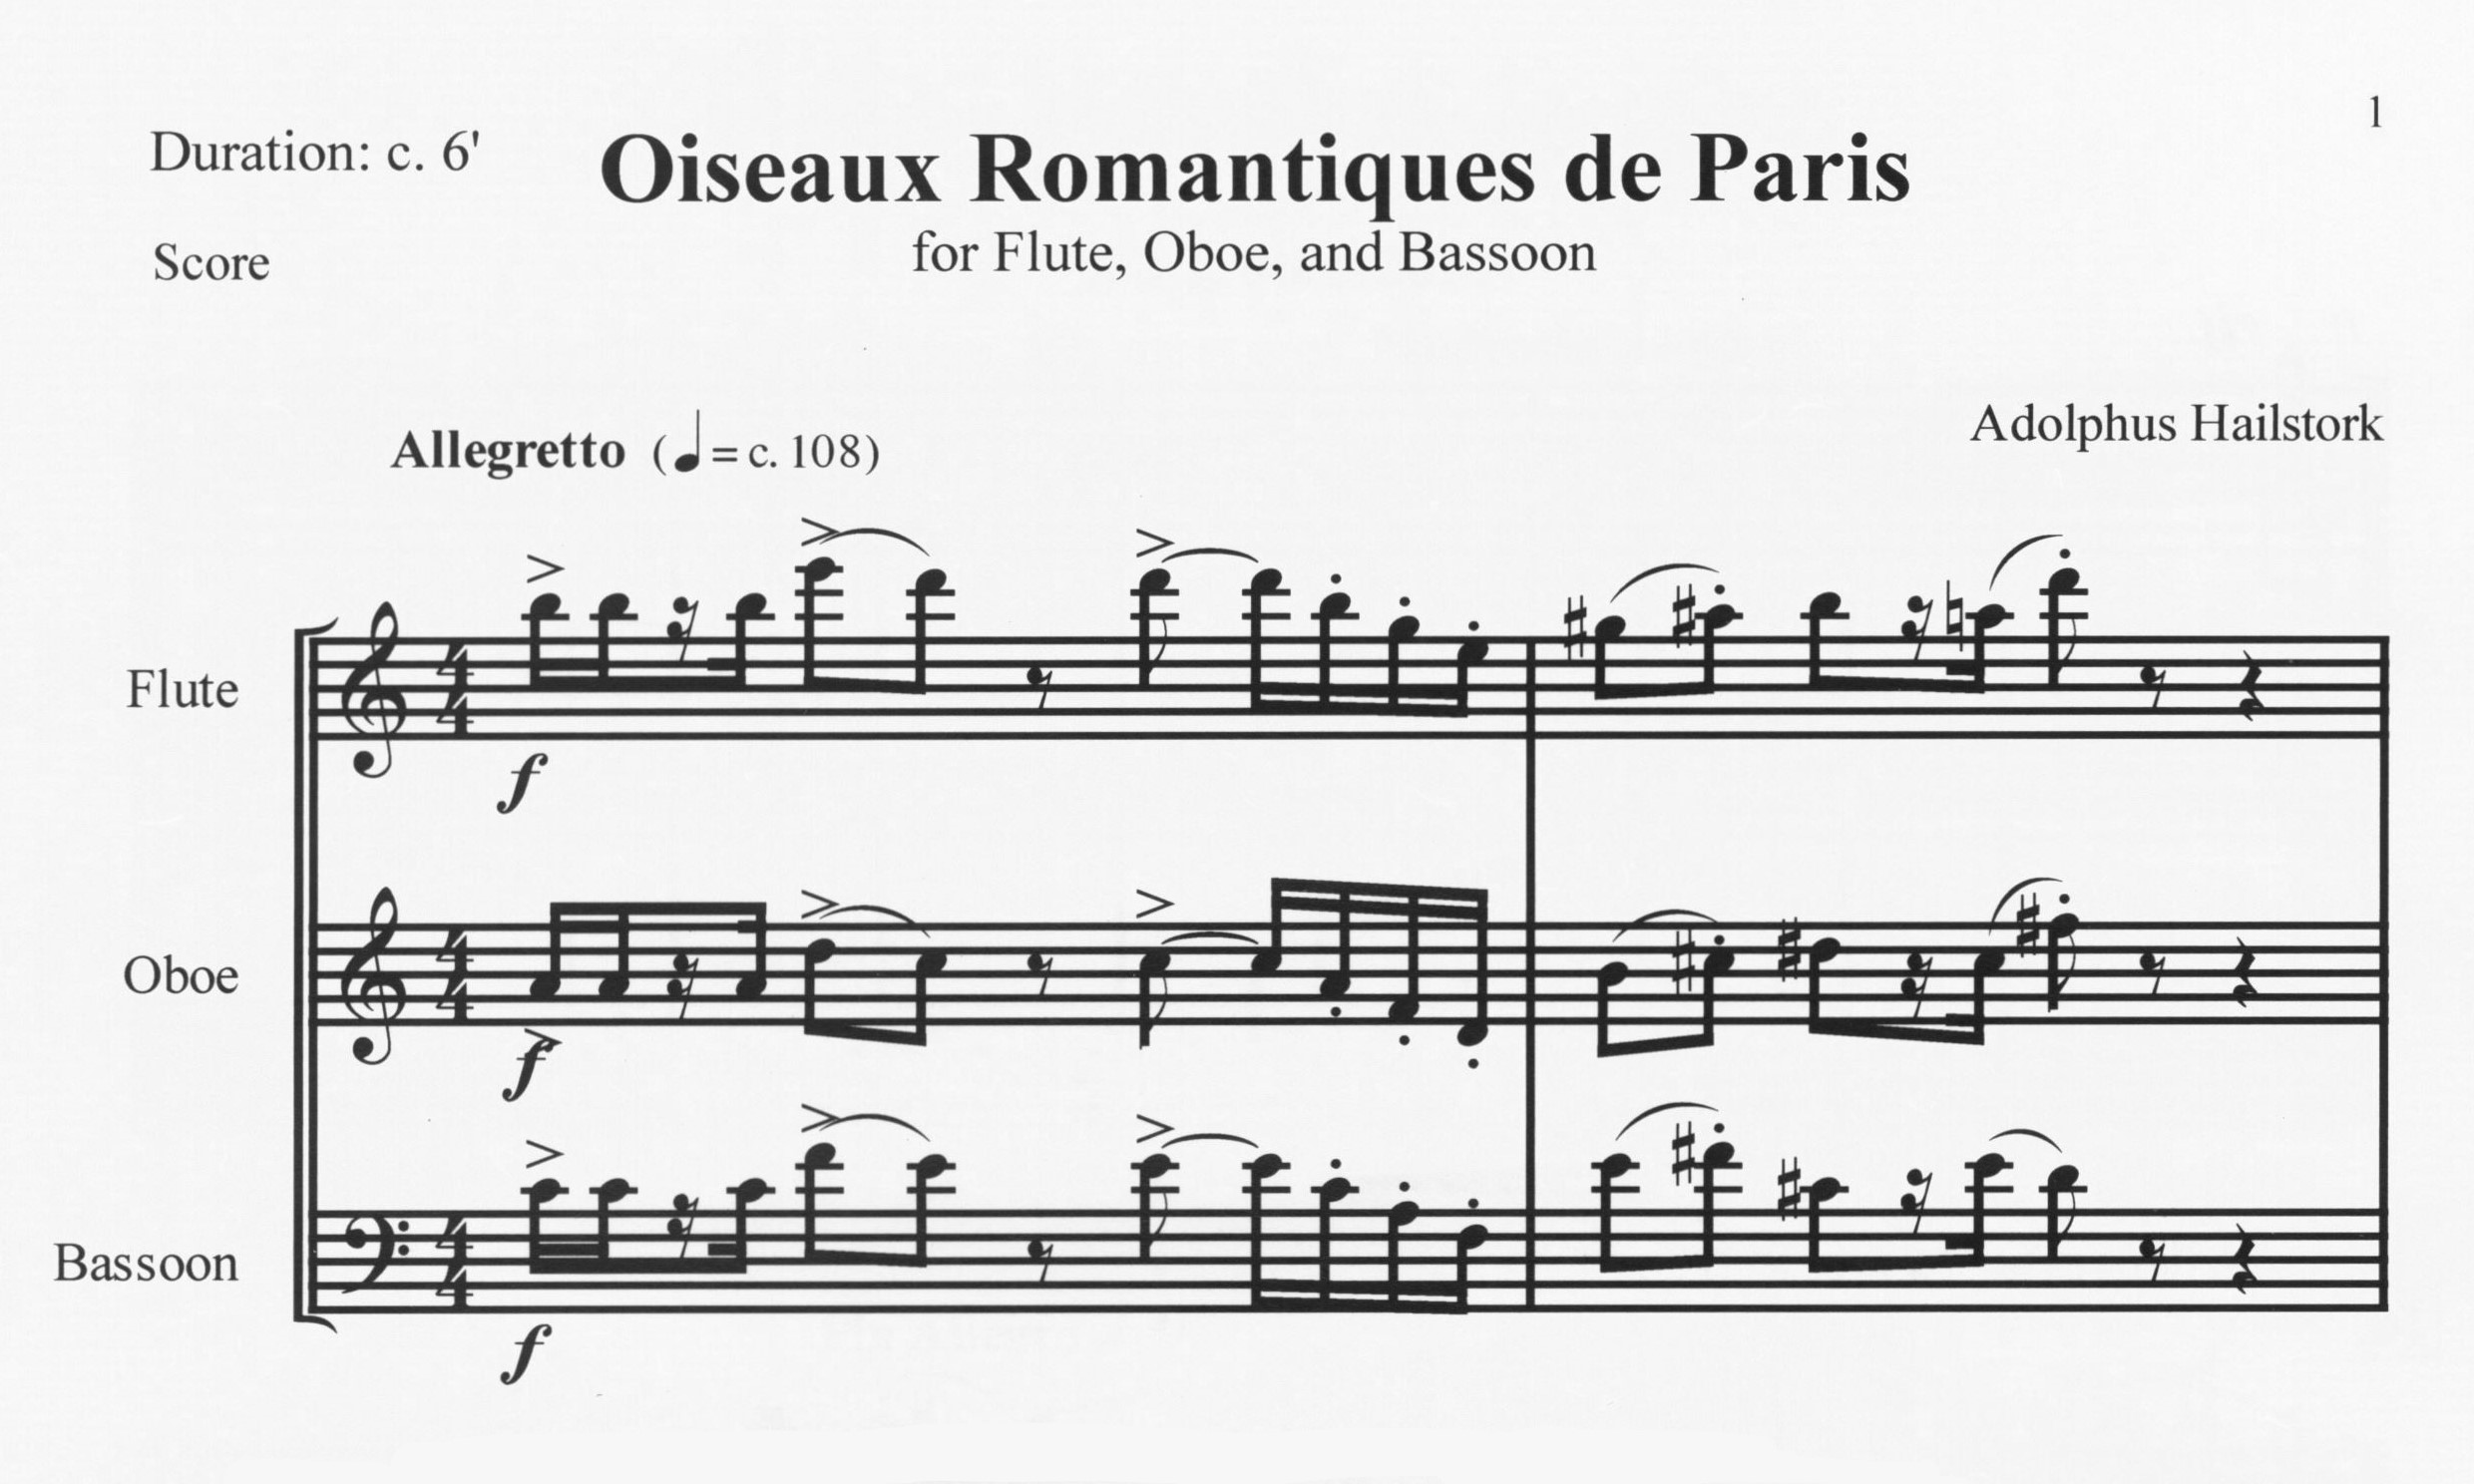 Oiseaux Romantiques de Paris - Adolphus Hailstork